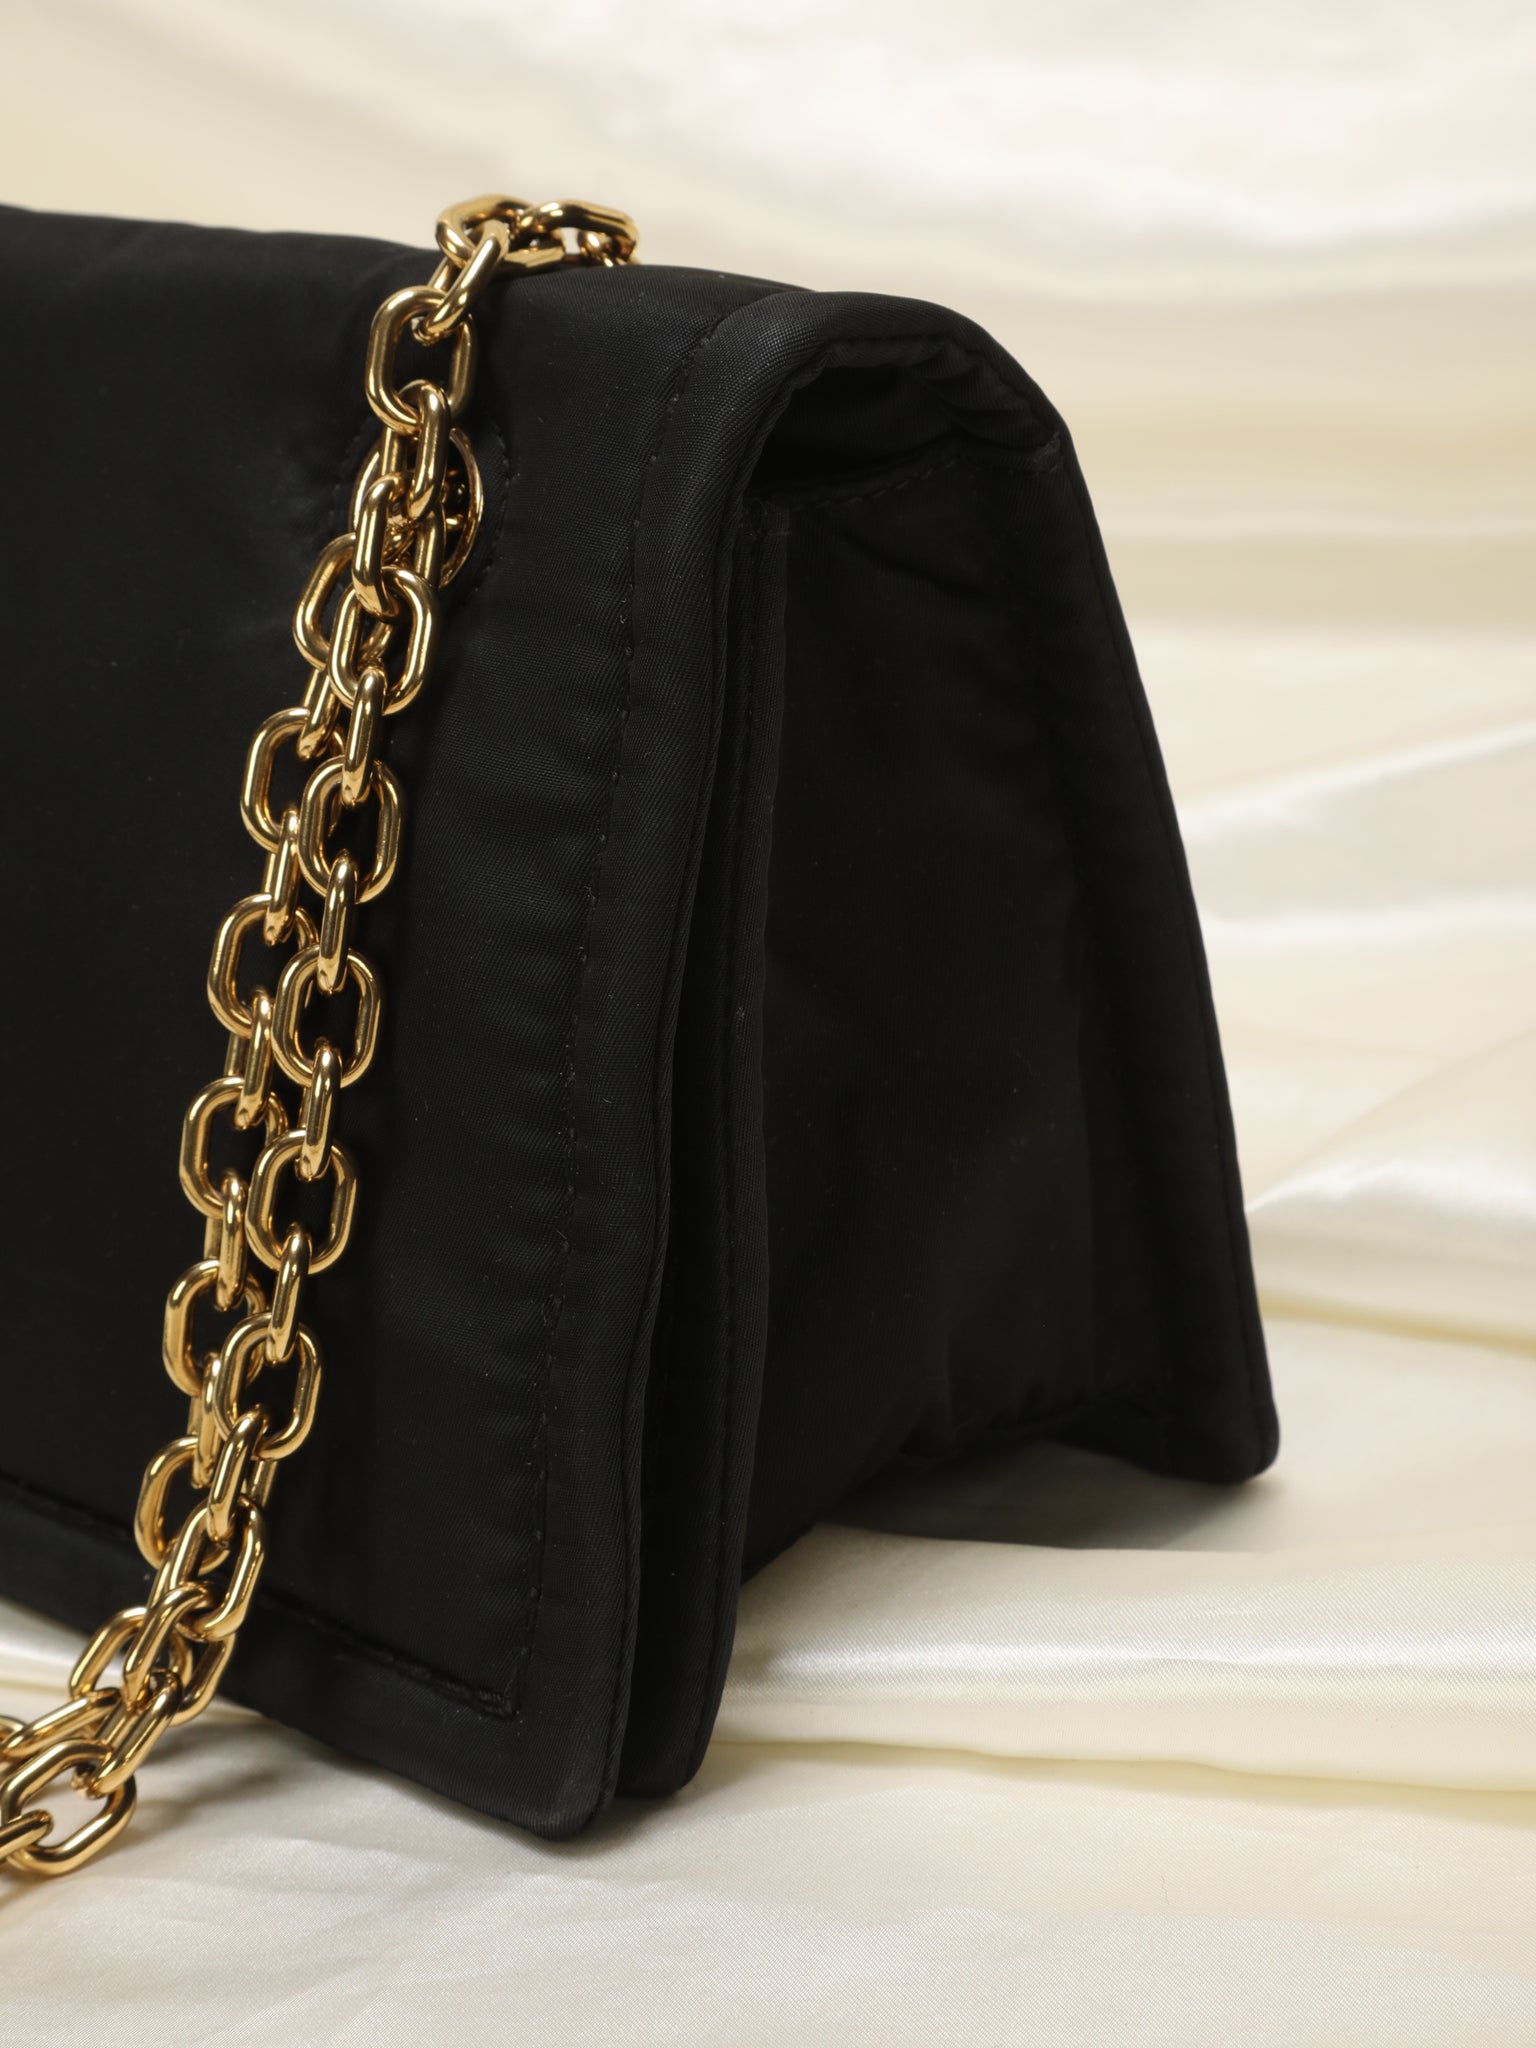 Rare Prada Nylon Chain Flap Bag